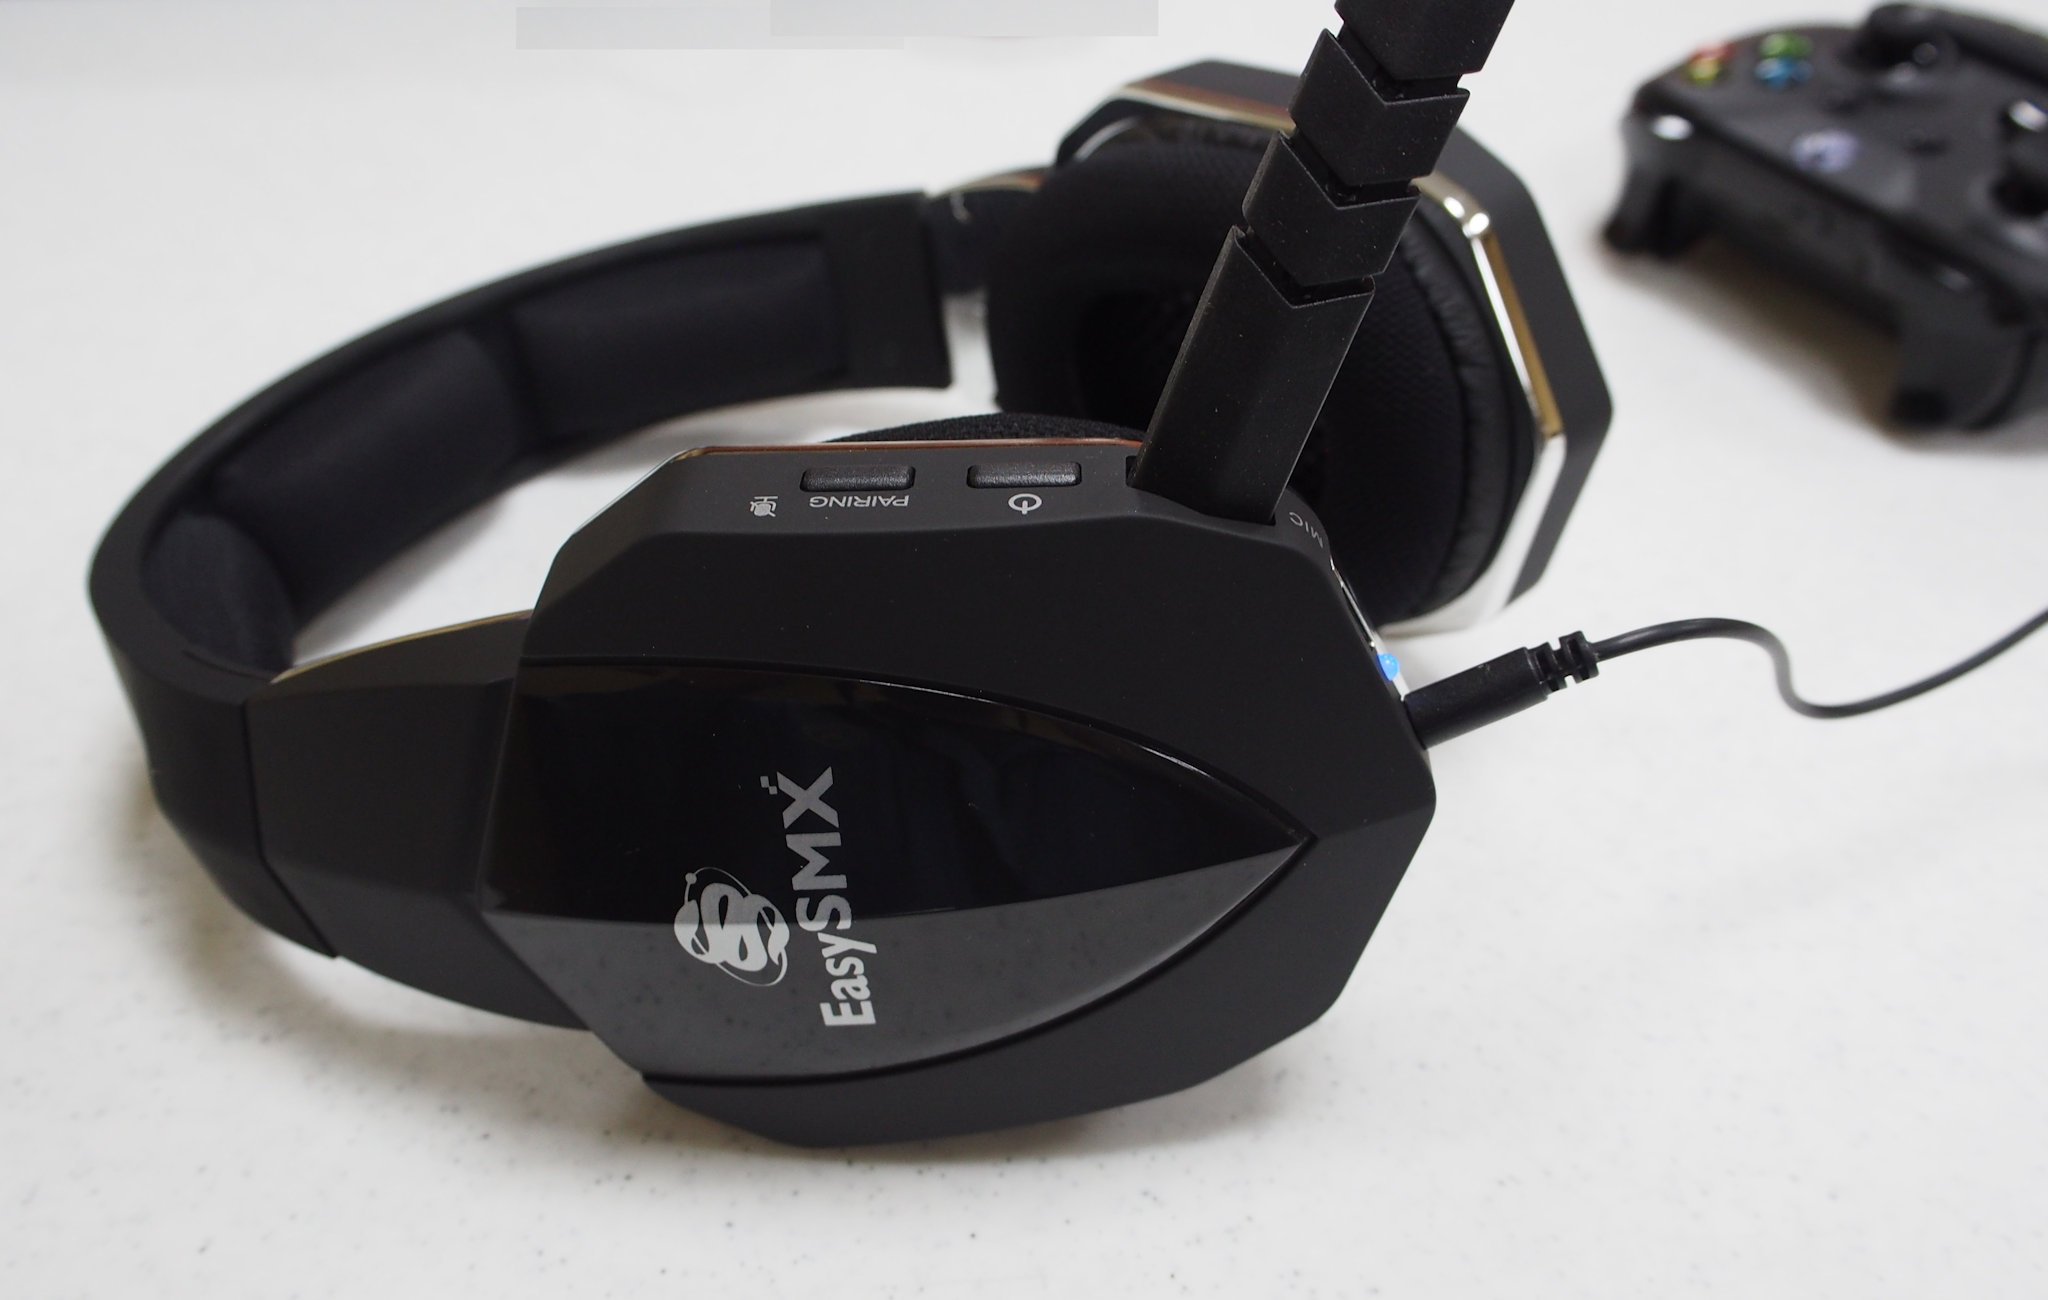 EasySMX Wireless Headset Xbox One